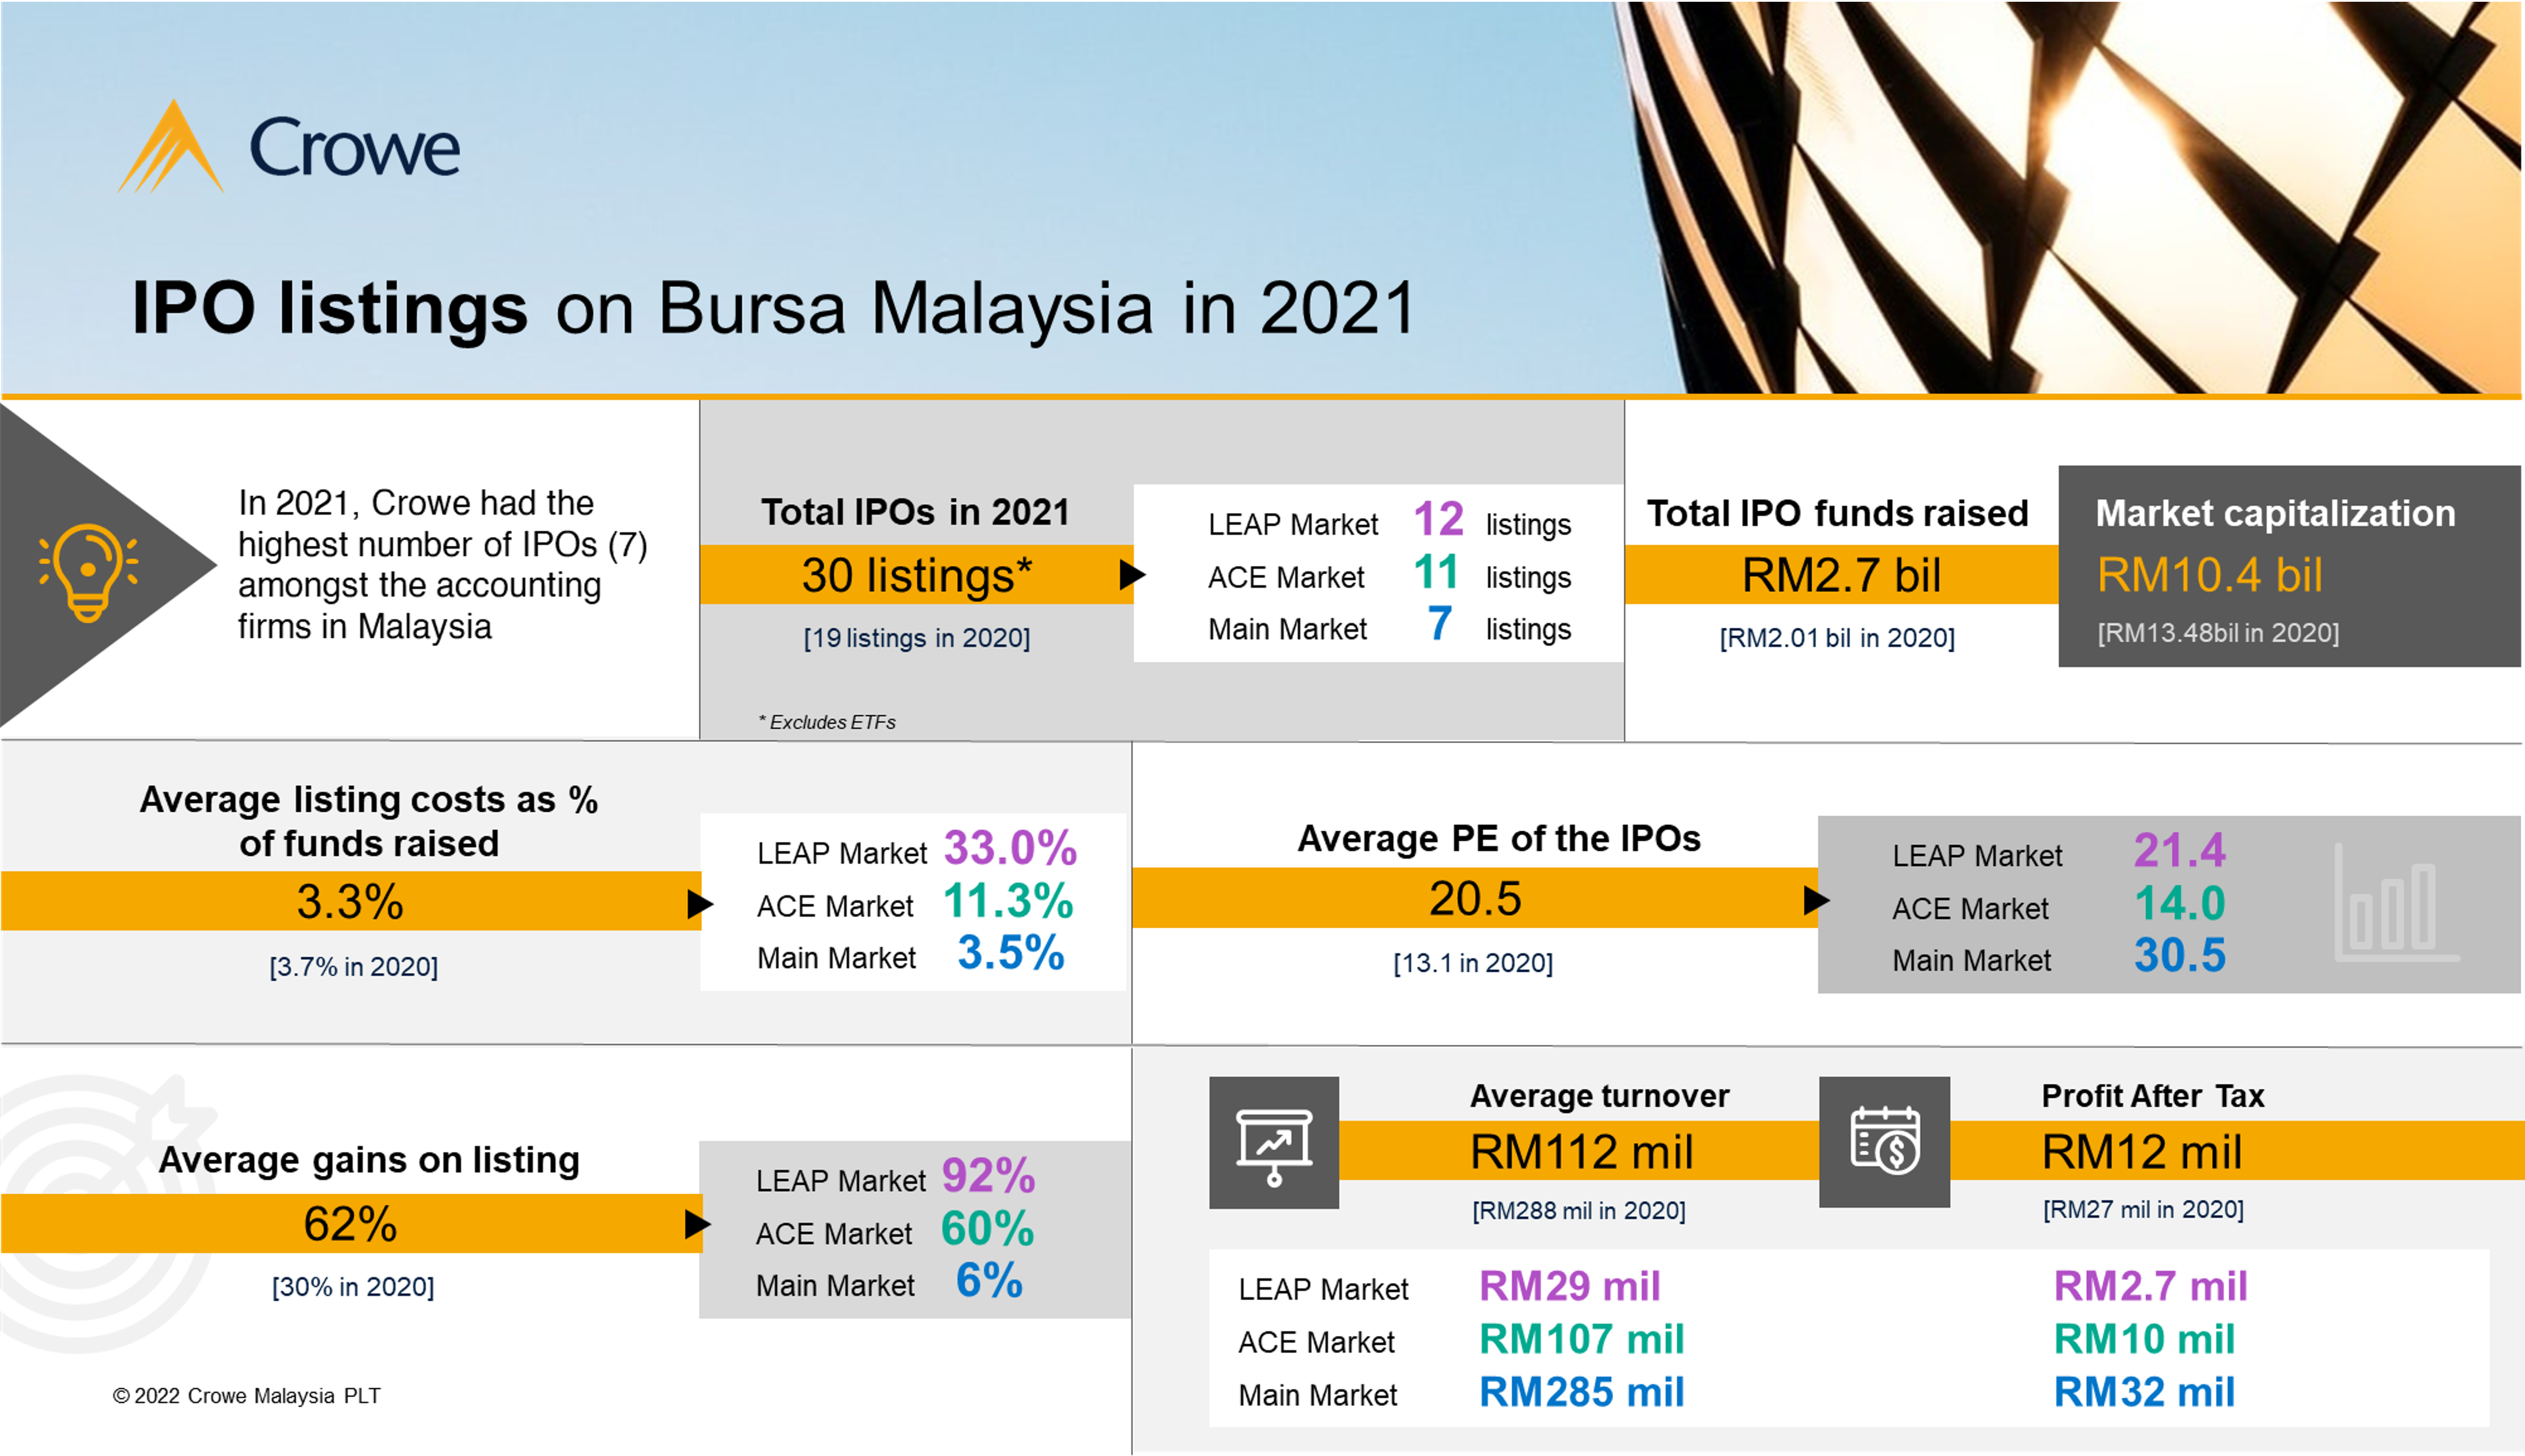 Bursa malaysia listed company